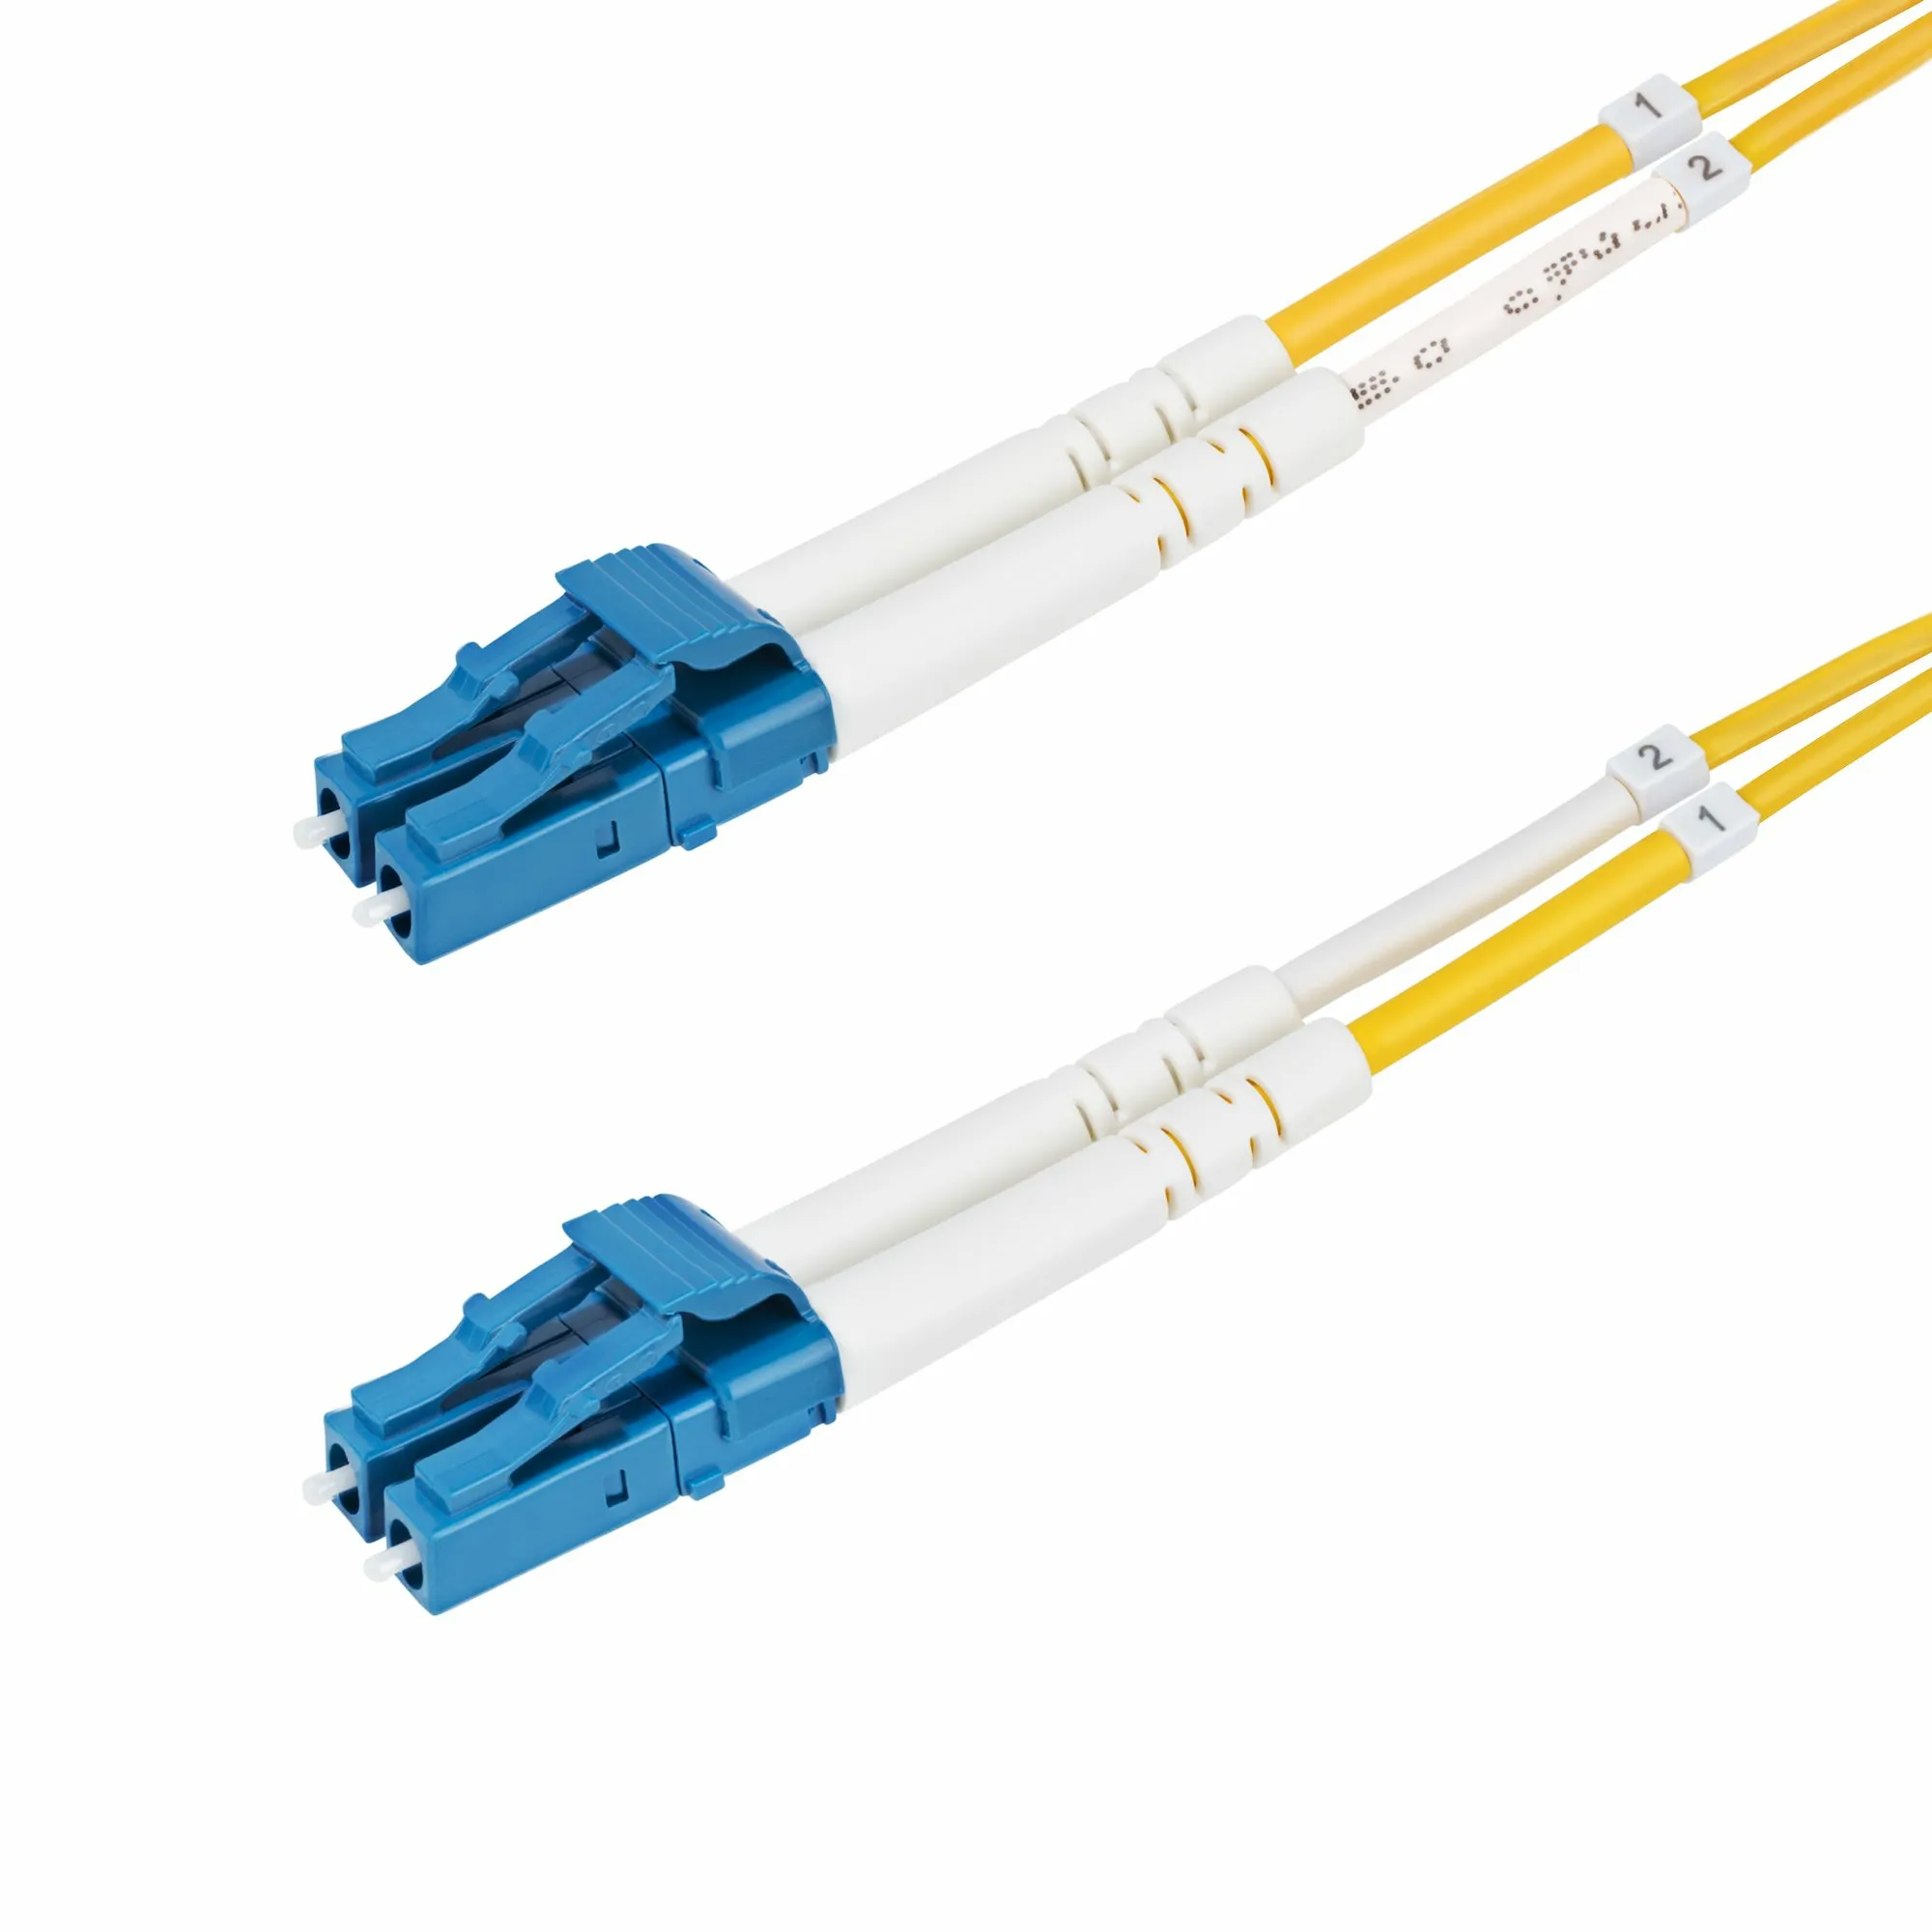 Achat StarTech.com Câble Fibre Optique de 50m Duplex Monomode au meilleur prix